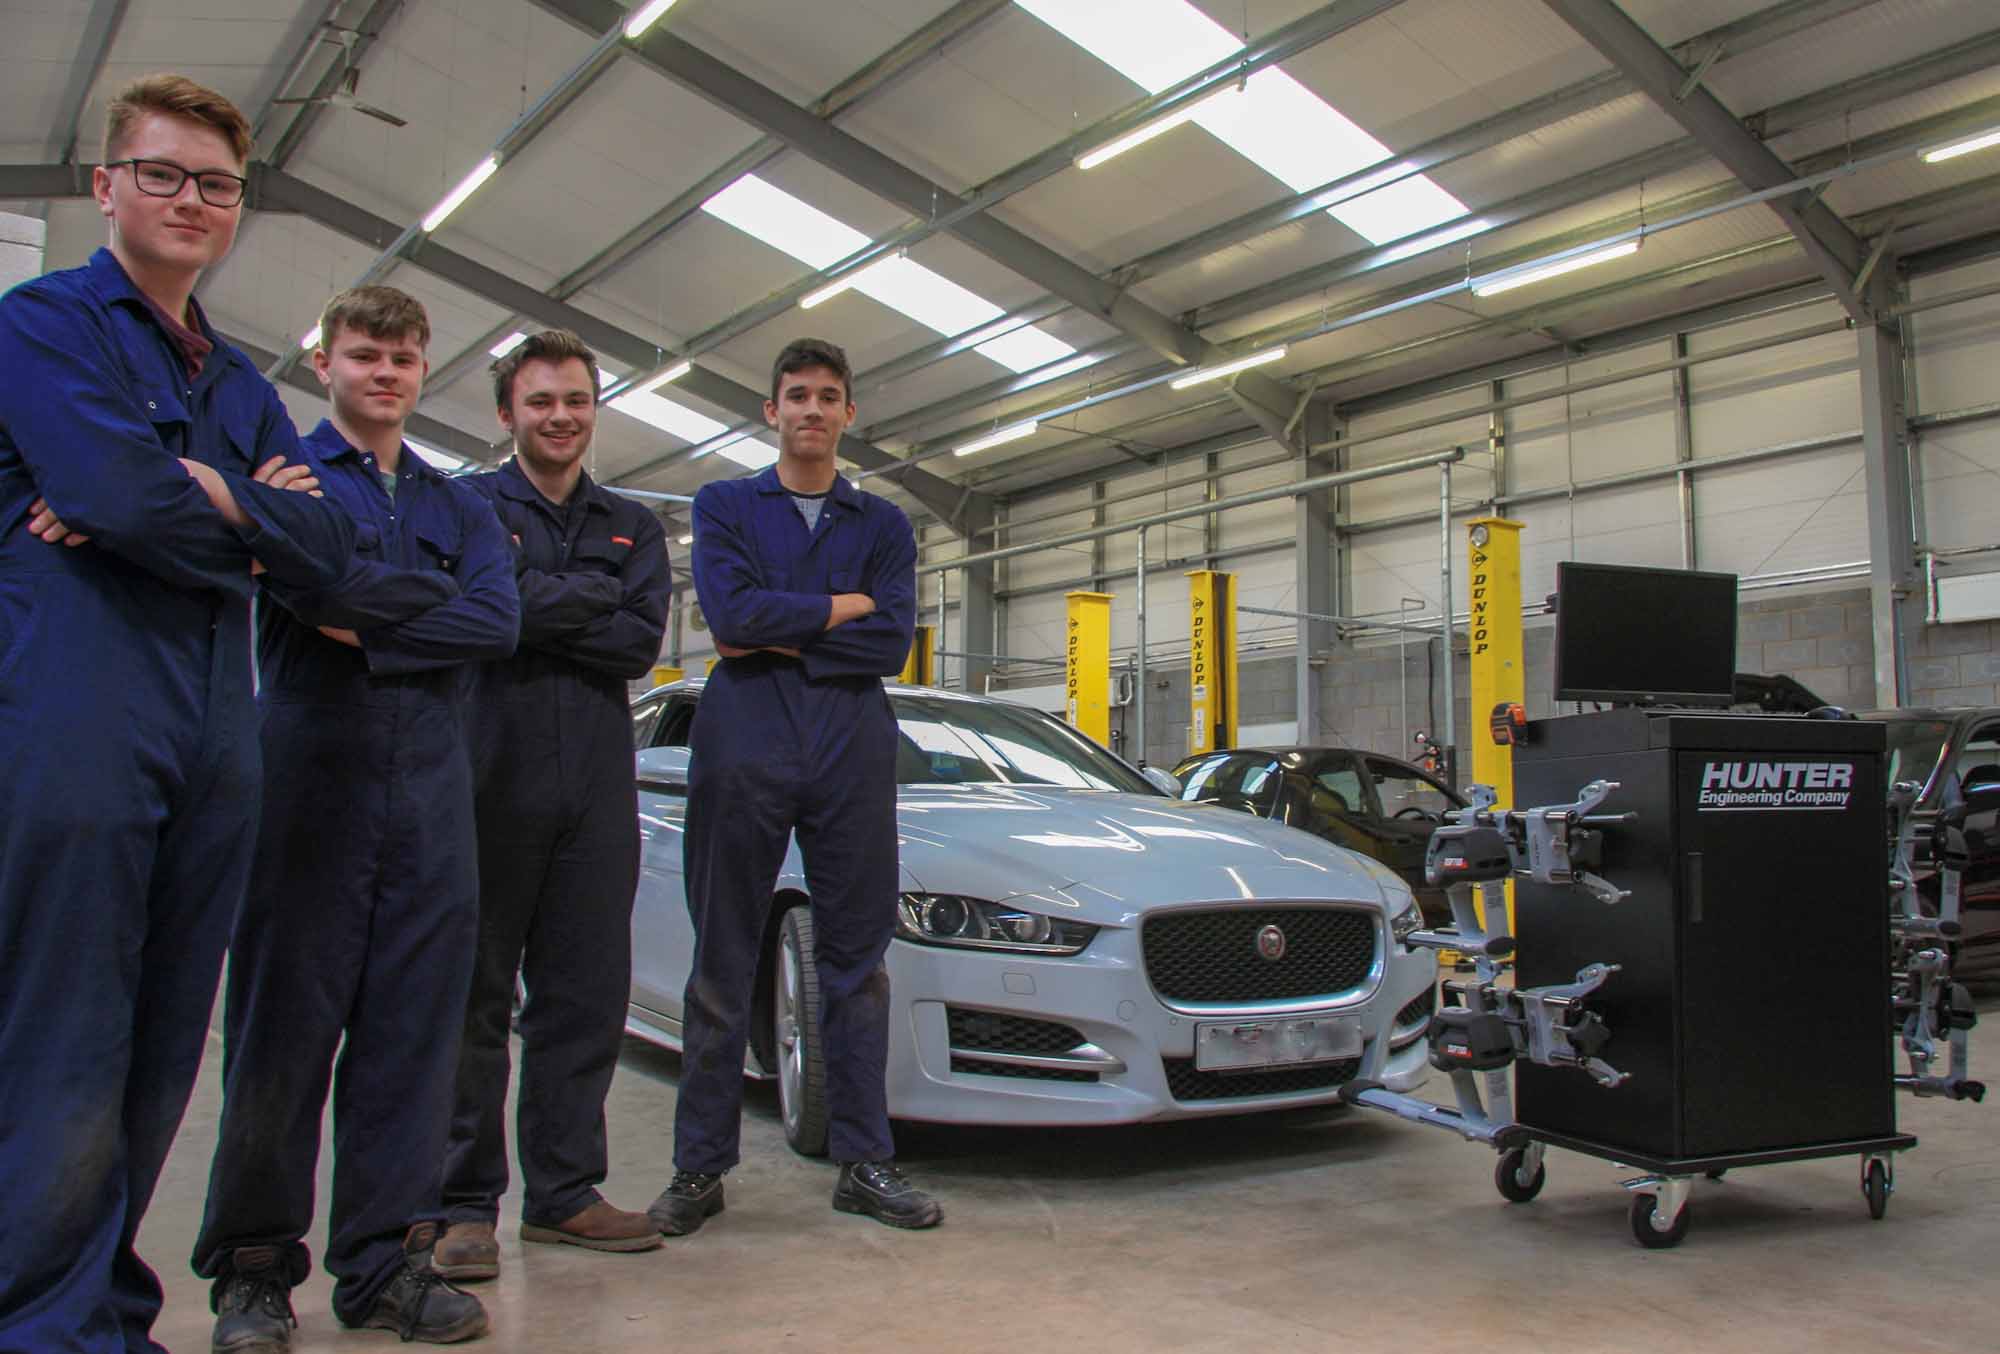 Hunter garage equipment helps trainee vehicle technicians get hands-on